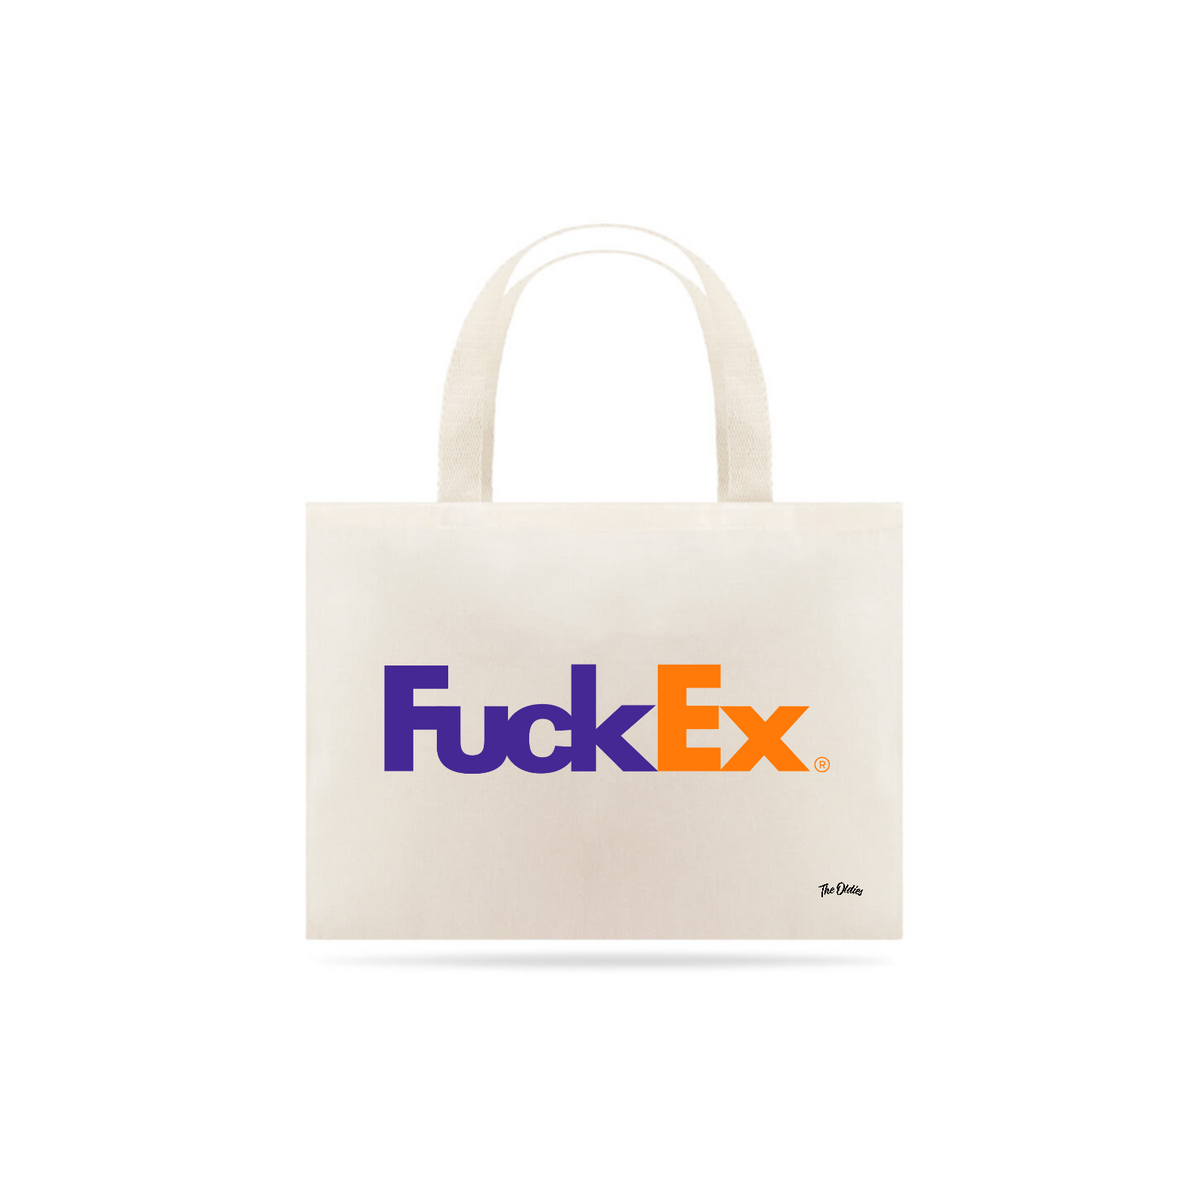 Nome do produto: fuckex 